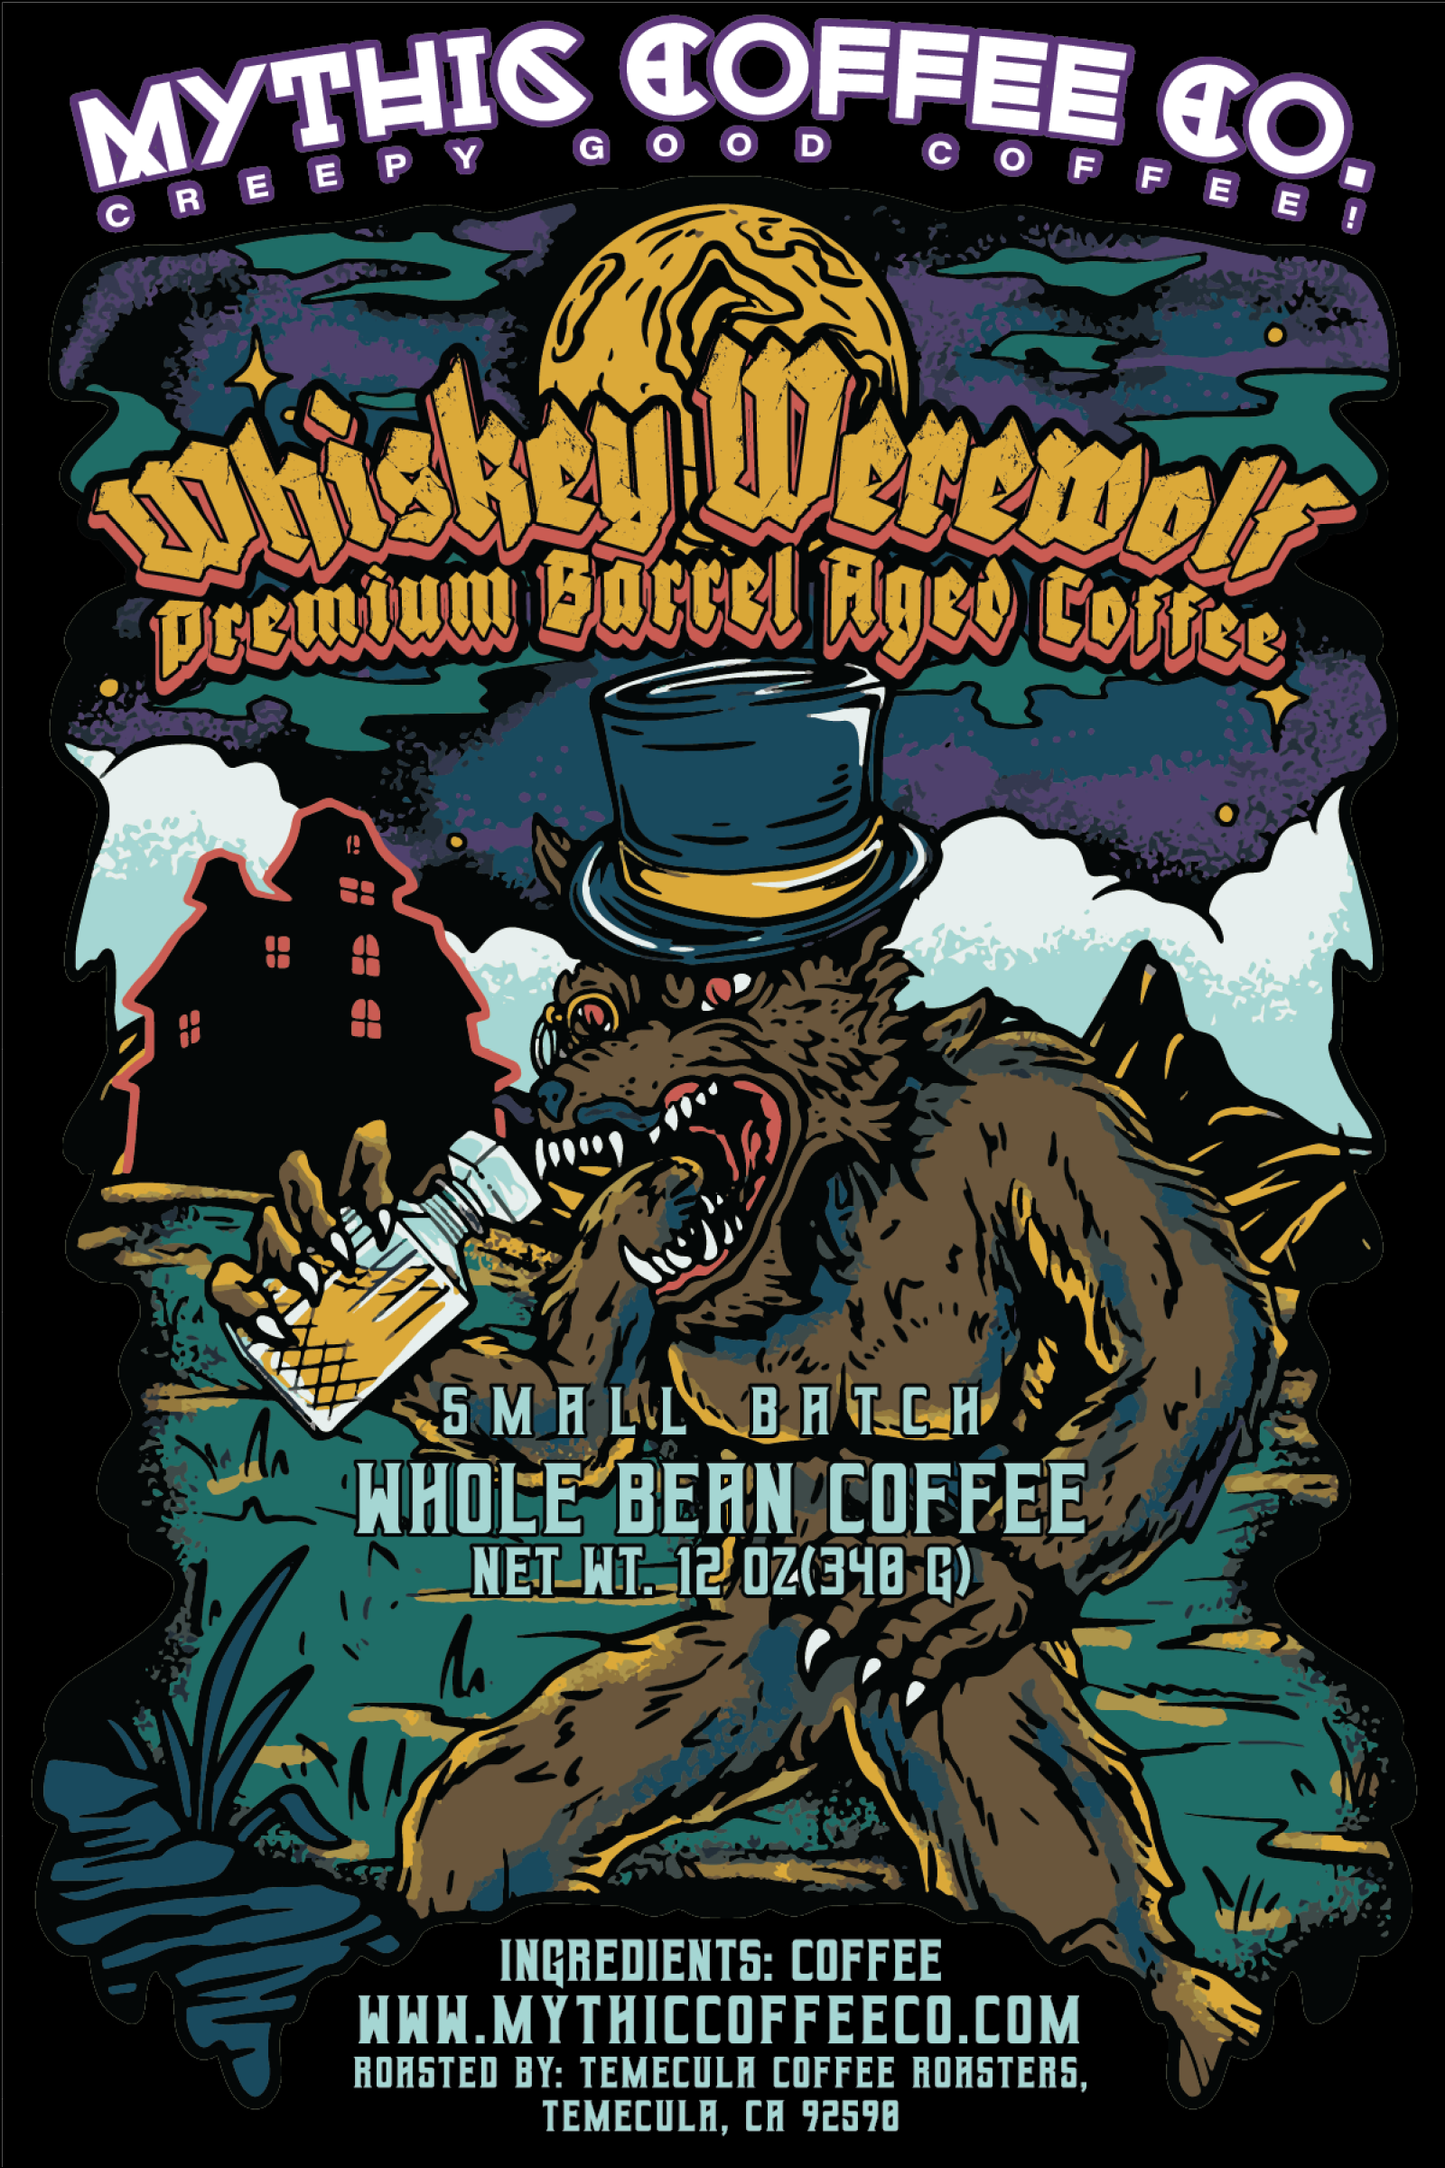 Whiskey Werewolf Premium Barrel Aged Coffee